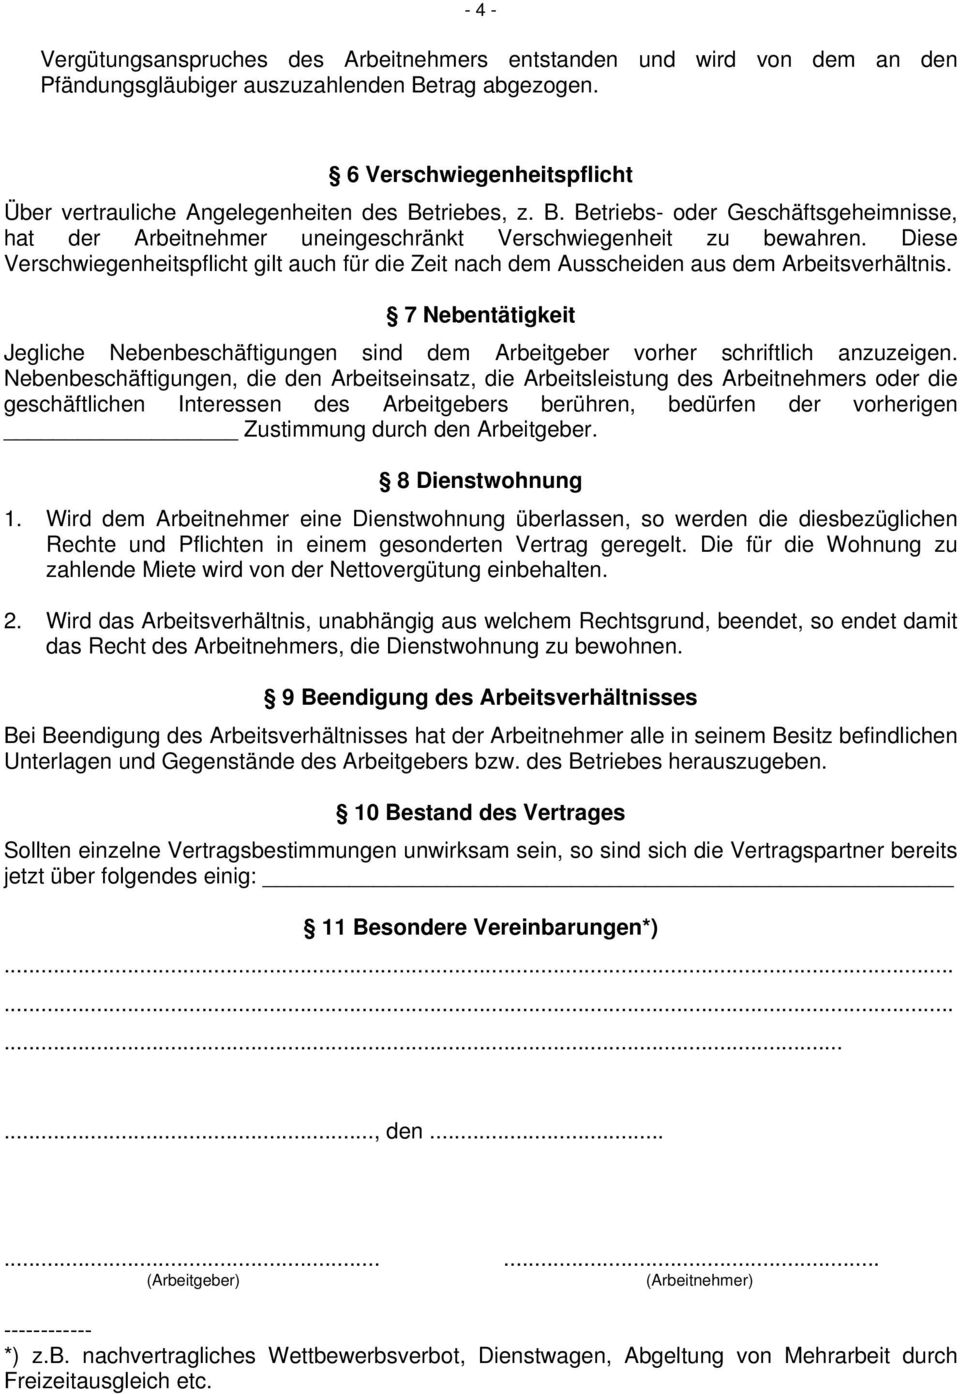 Arbeitsvertrag Für Arbeitnehmer Im Bayerischen Bäckerhandwerk Pdf